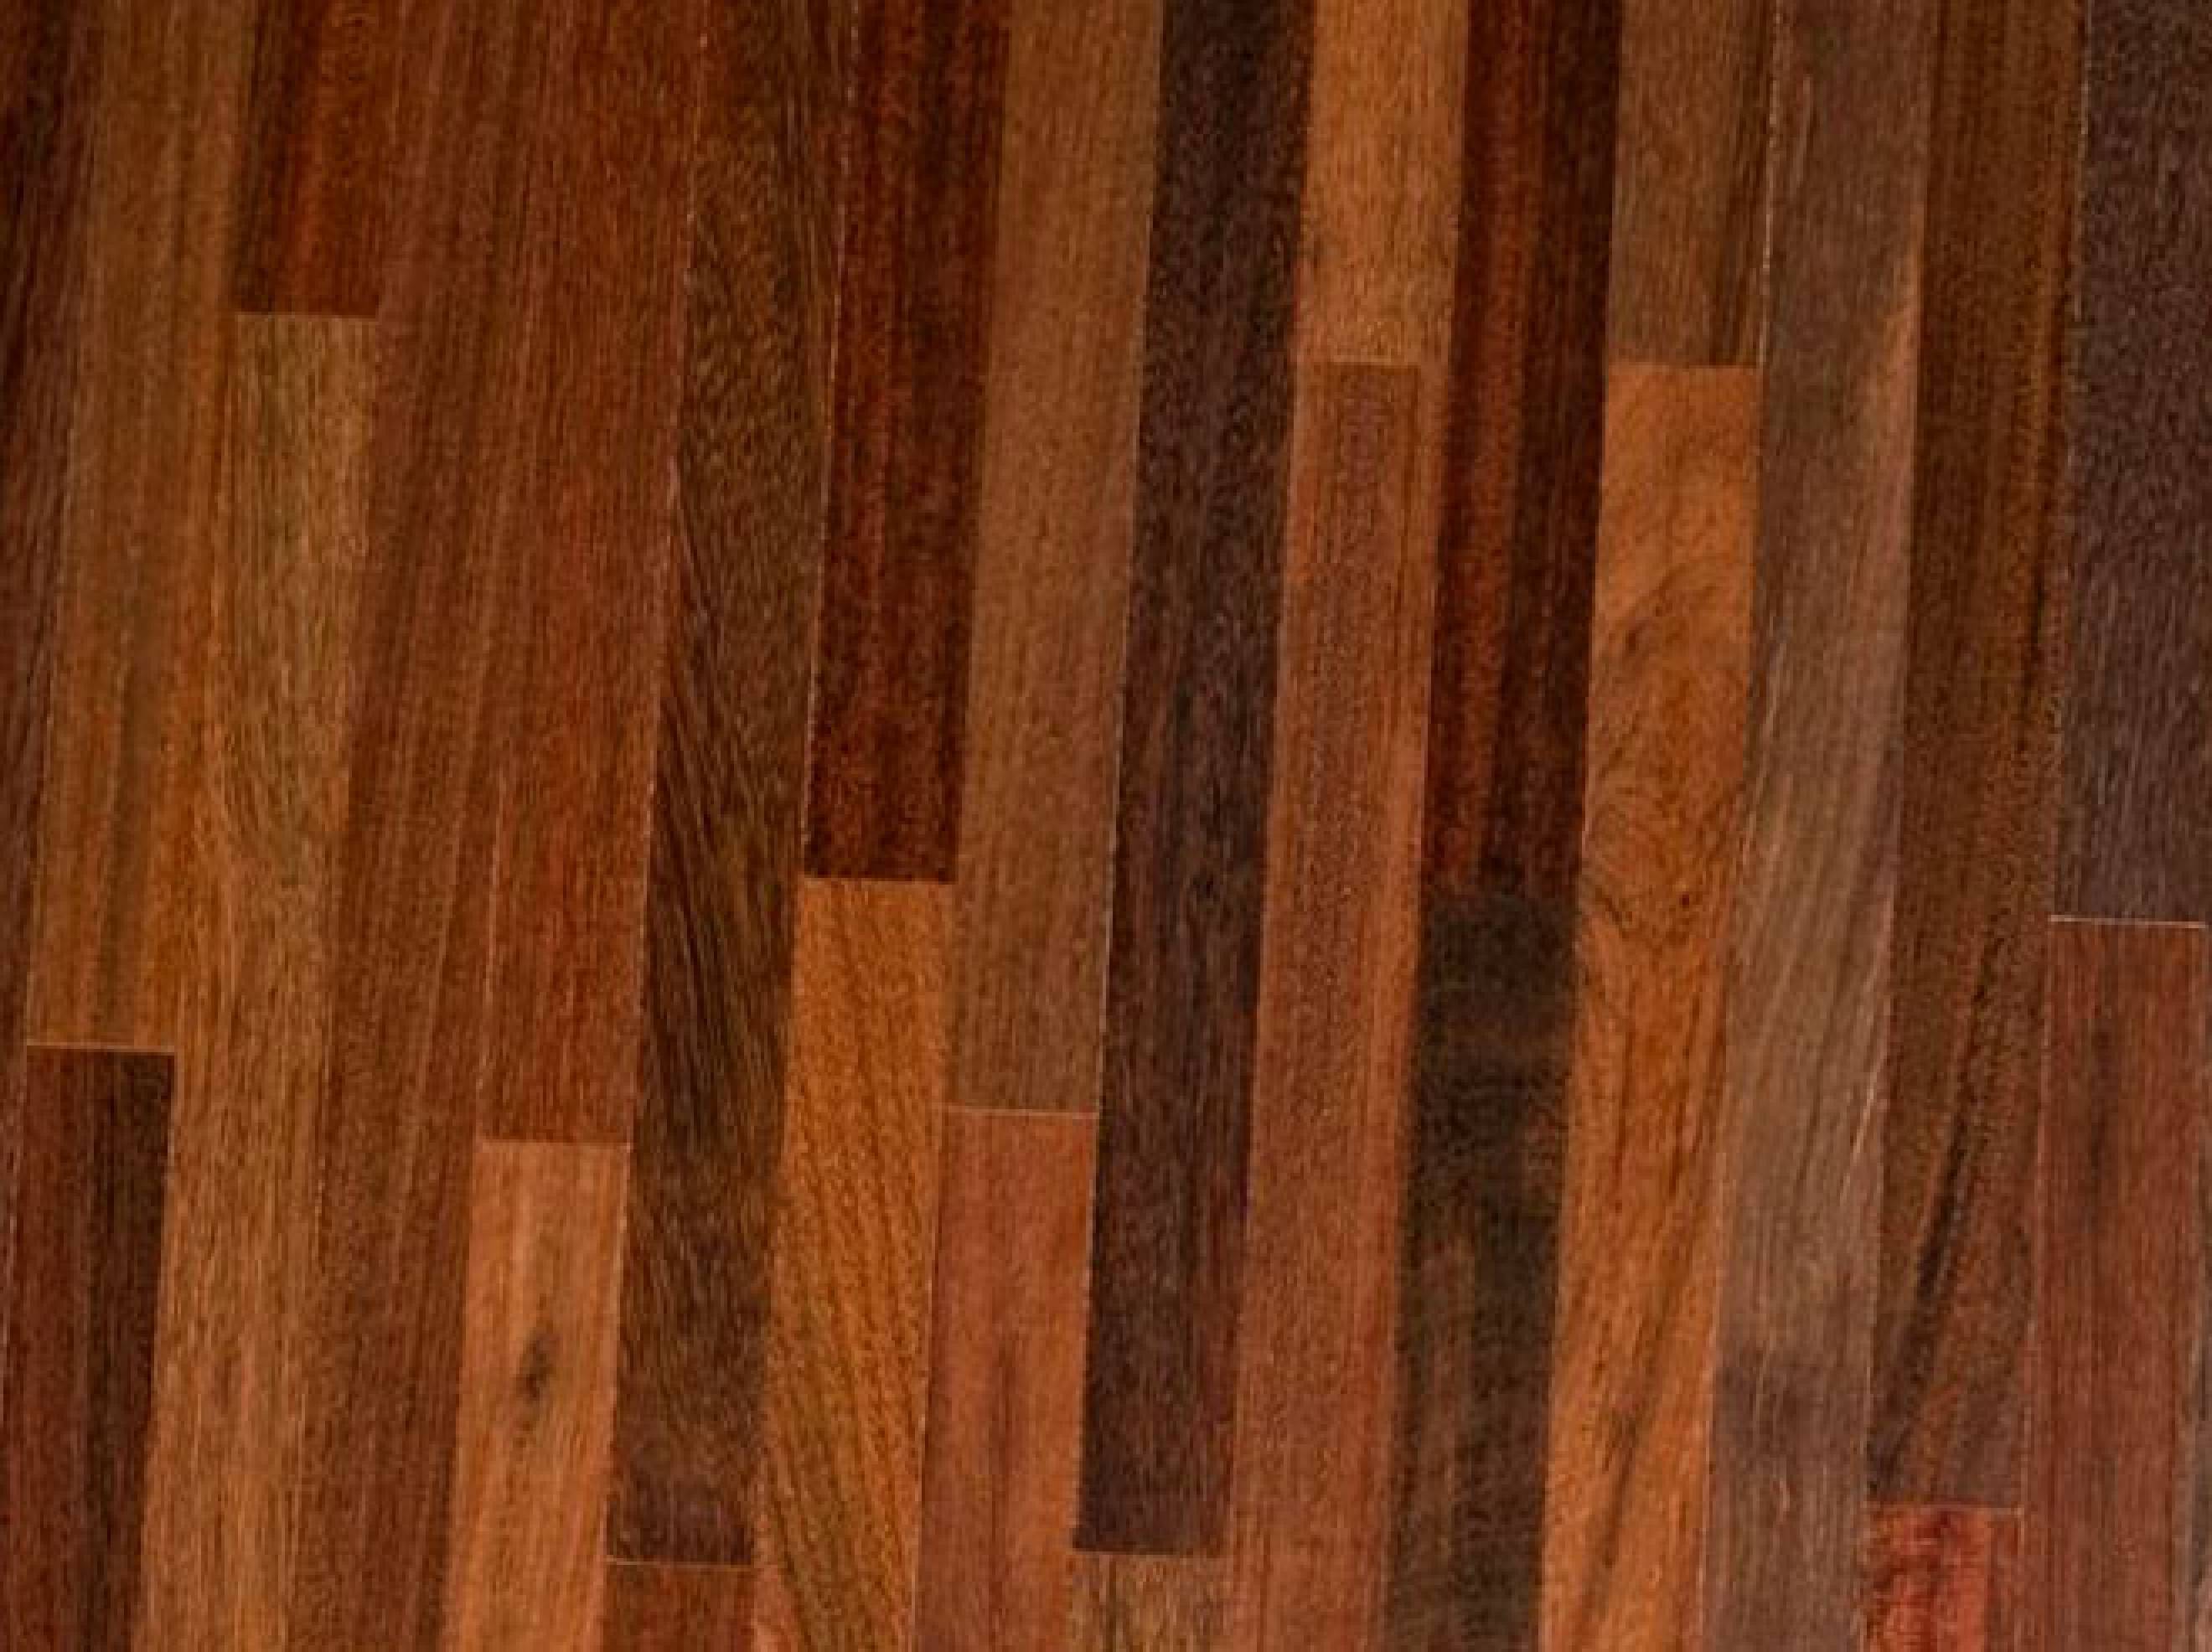 Brazilian IPE Hardwood Flooring